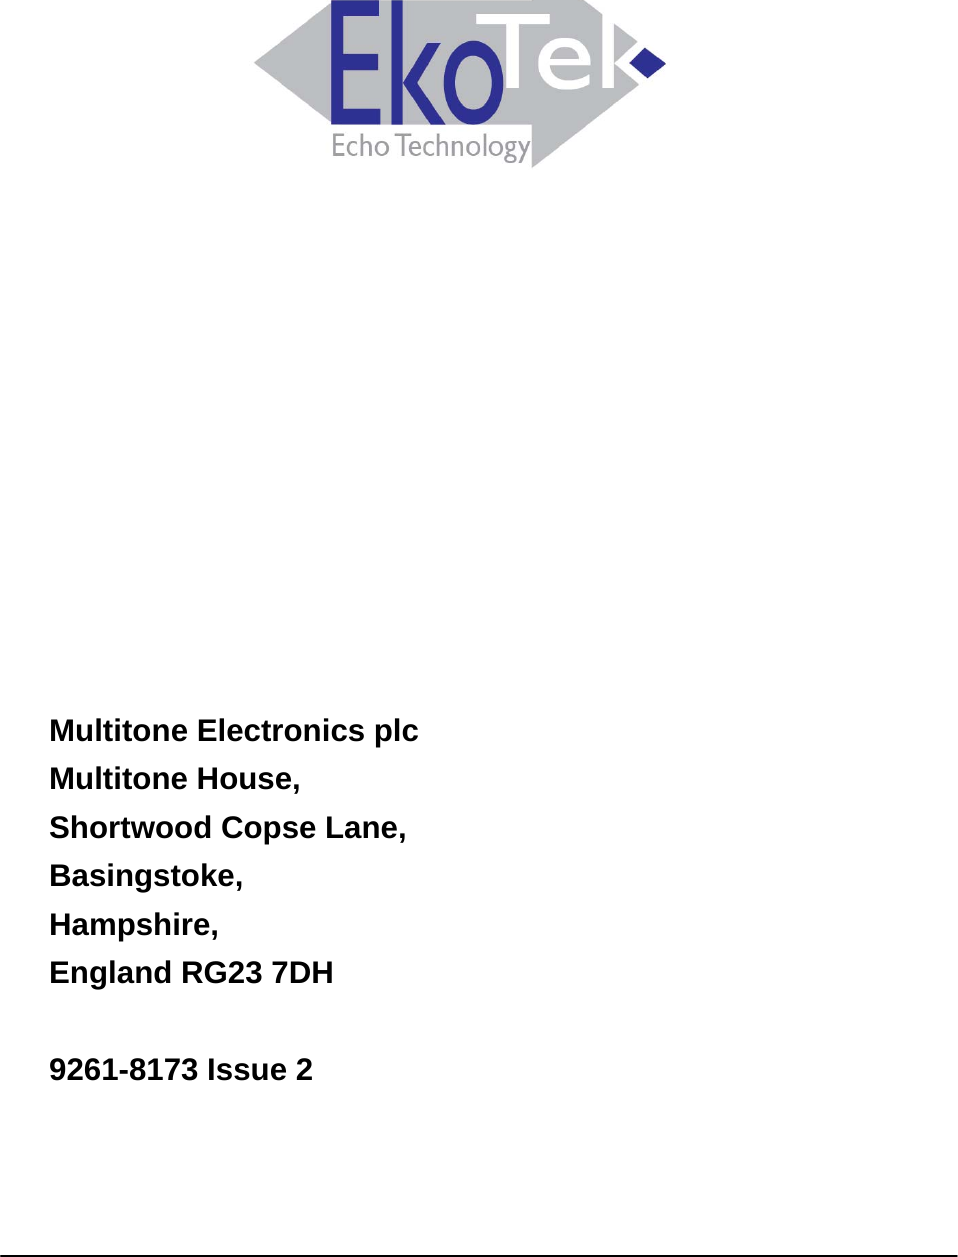                          Multitone Electronics plc Multitone House, Shortwood Copse Lane, Basingstoke, Hampshire, England RG23 7DH  9261-8173 Issue 2  